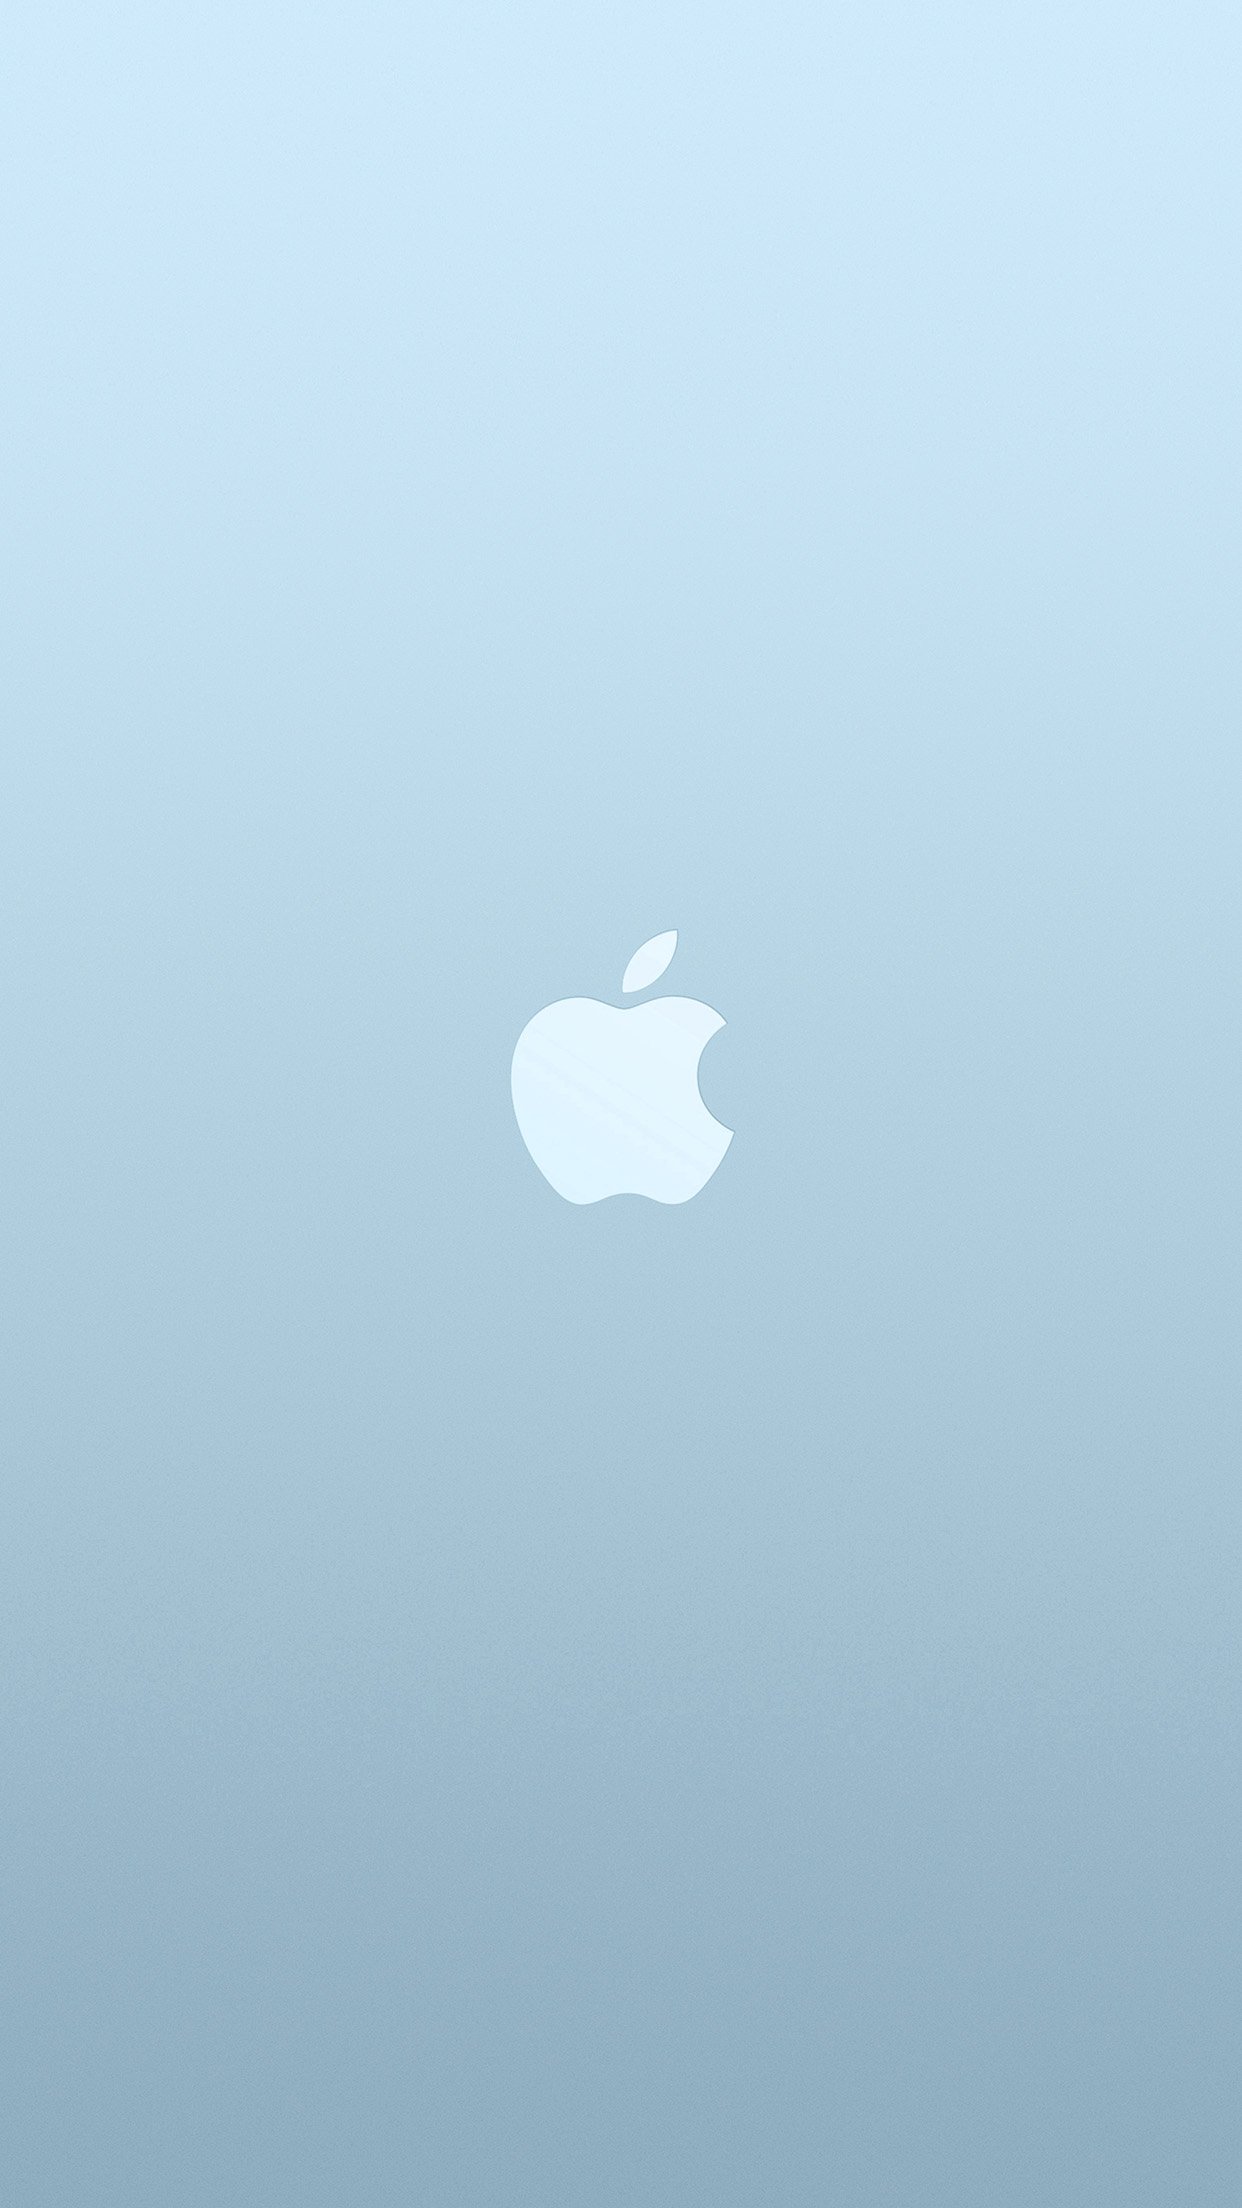 Logo Apple Blue White Minimal Illustration Art Android wallpaper